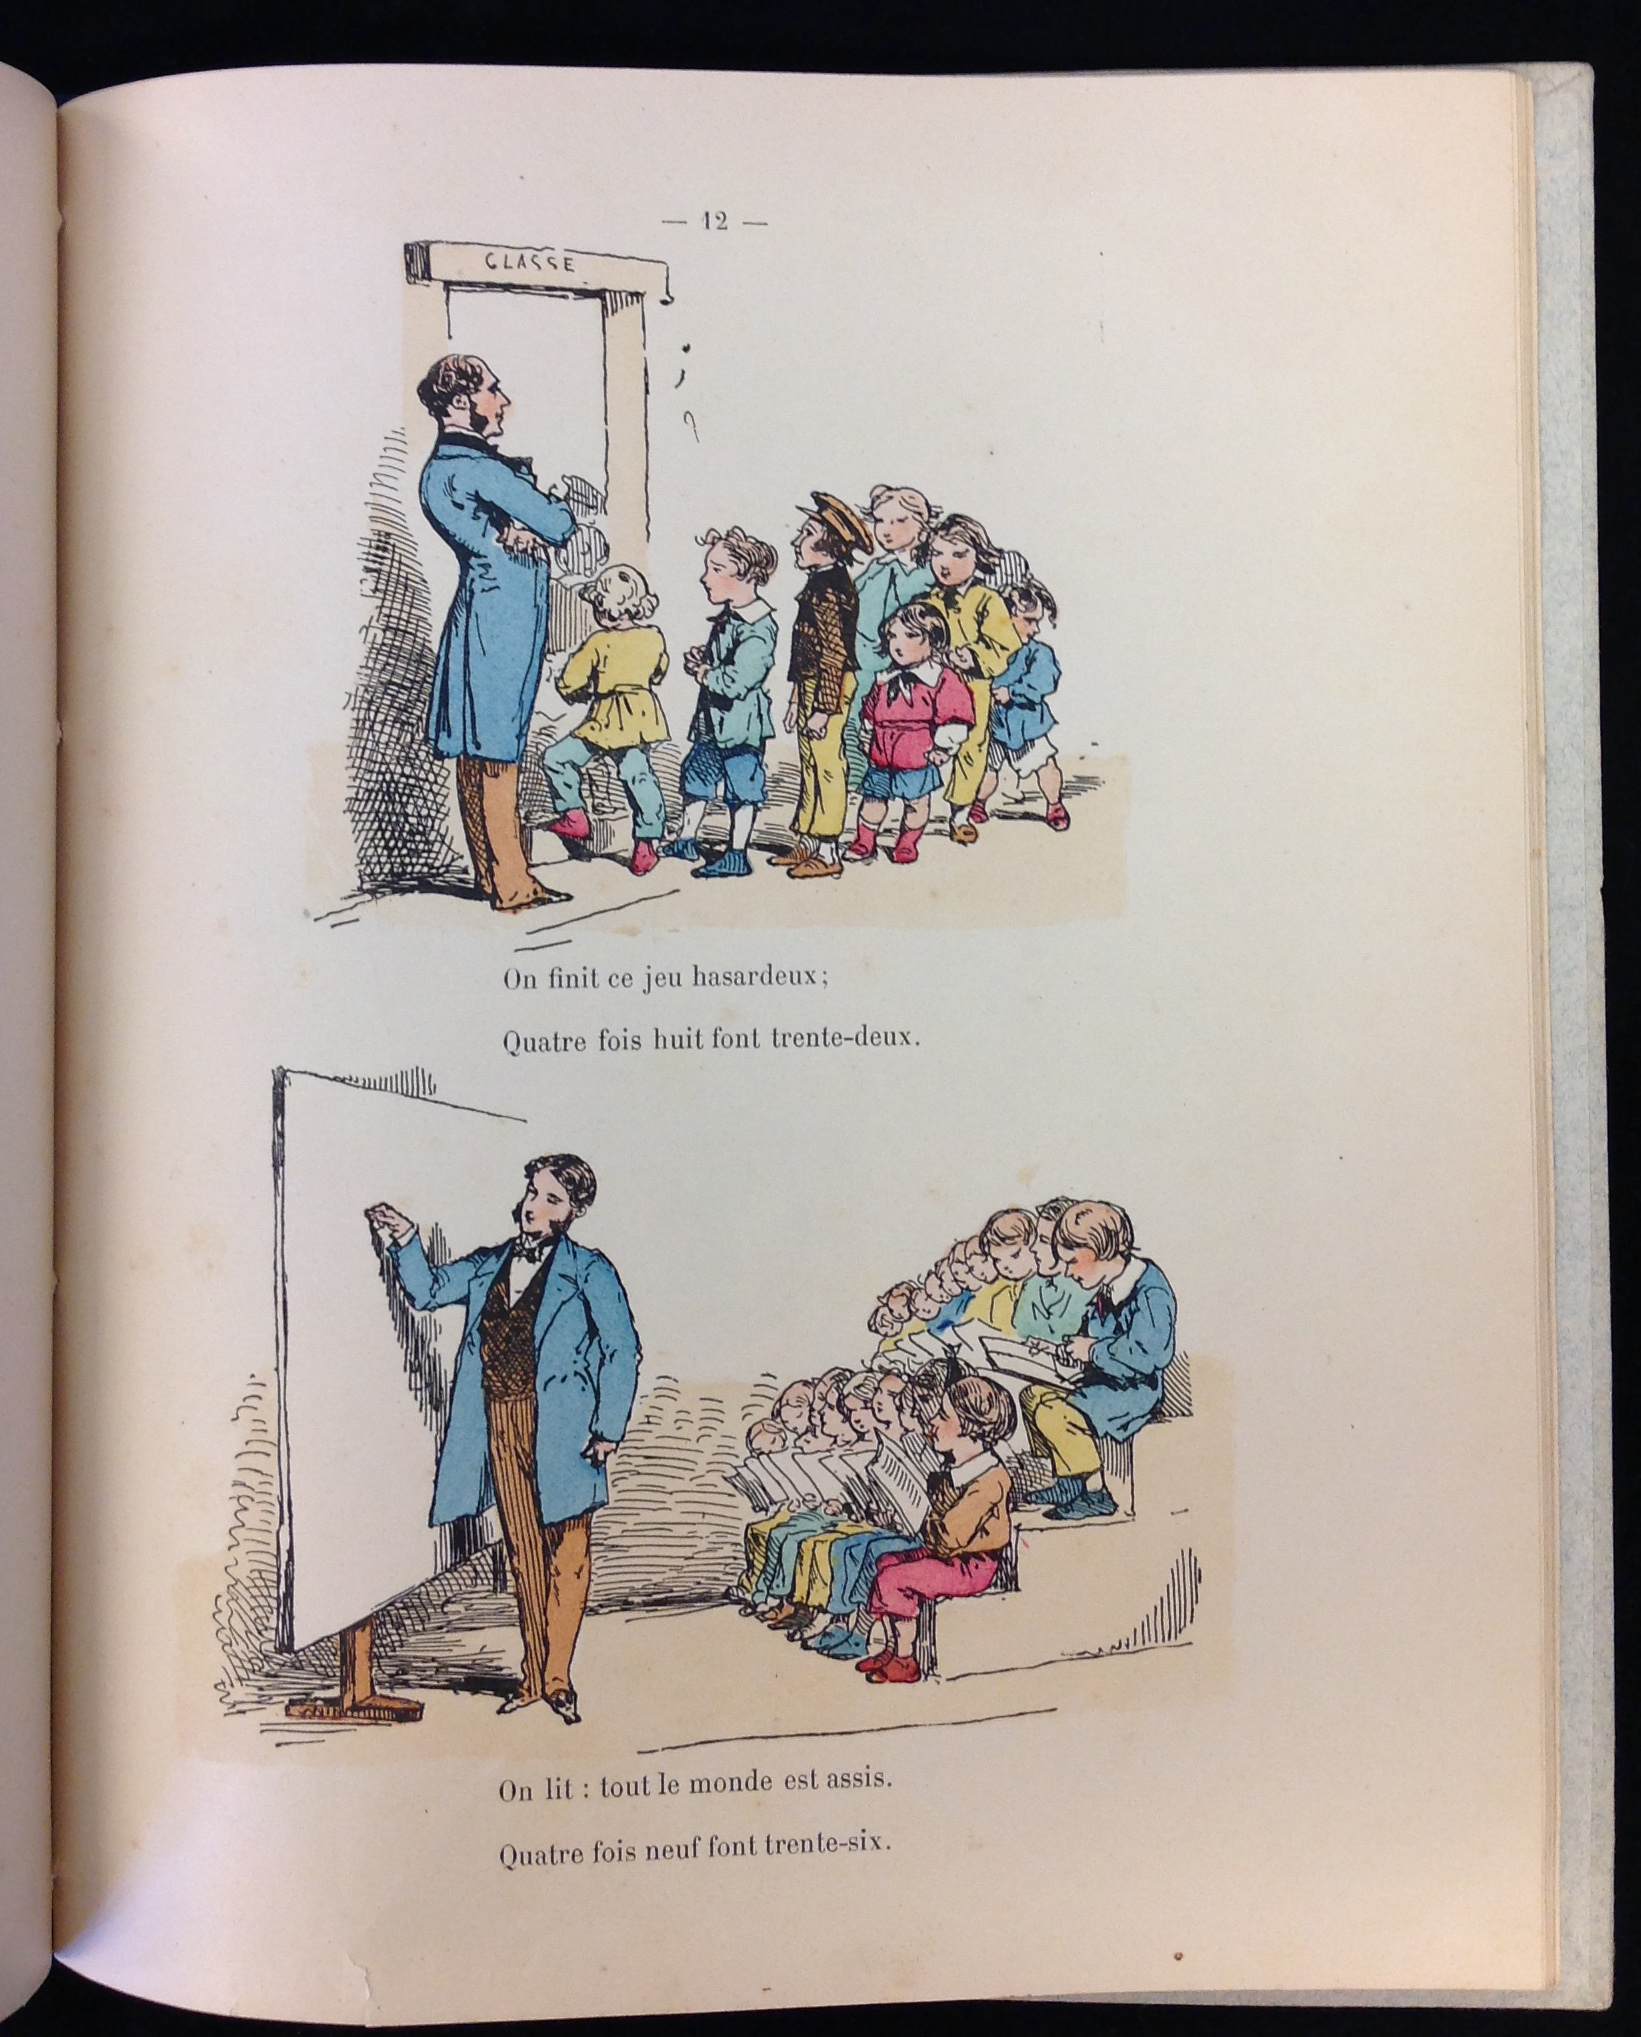 Illutration from Le Calcul Amusant. La table de Pythagore servie aux petits enfants. Paris: Librairie Hachette et Cie. Boulevard Saint-Germain, 79, ca. 1862